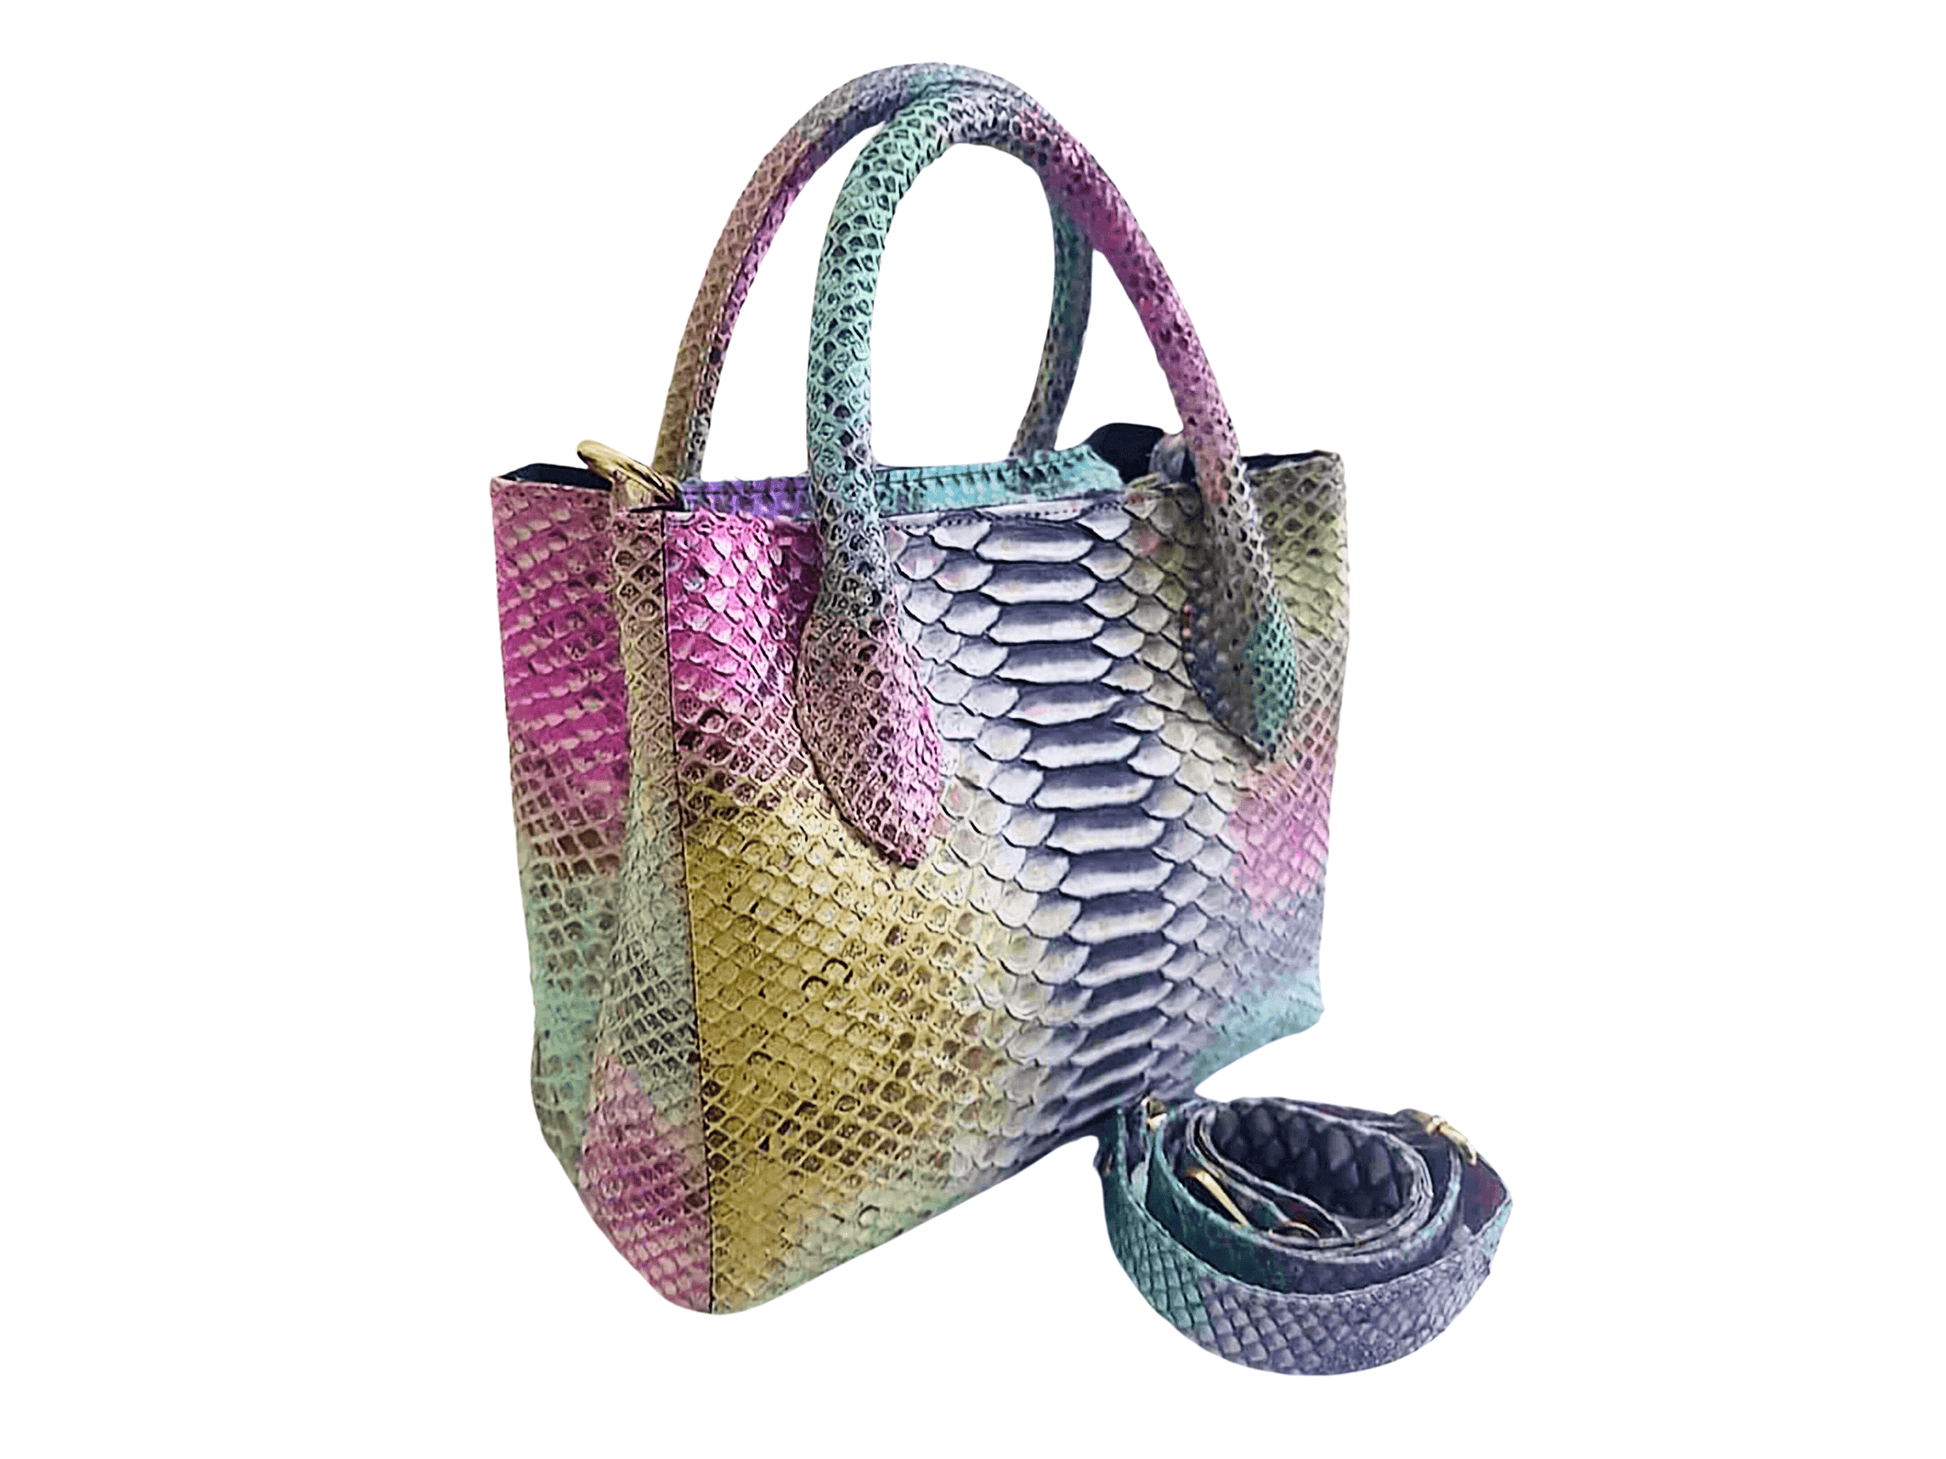 Tote Snakeskin Shoulder Bag Multi Color Three Python Jacket by LFM Fashion